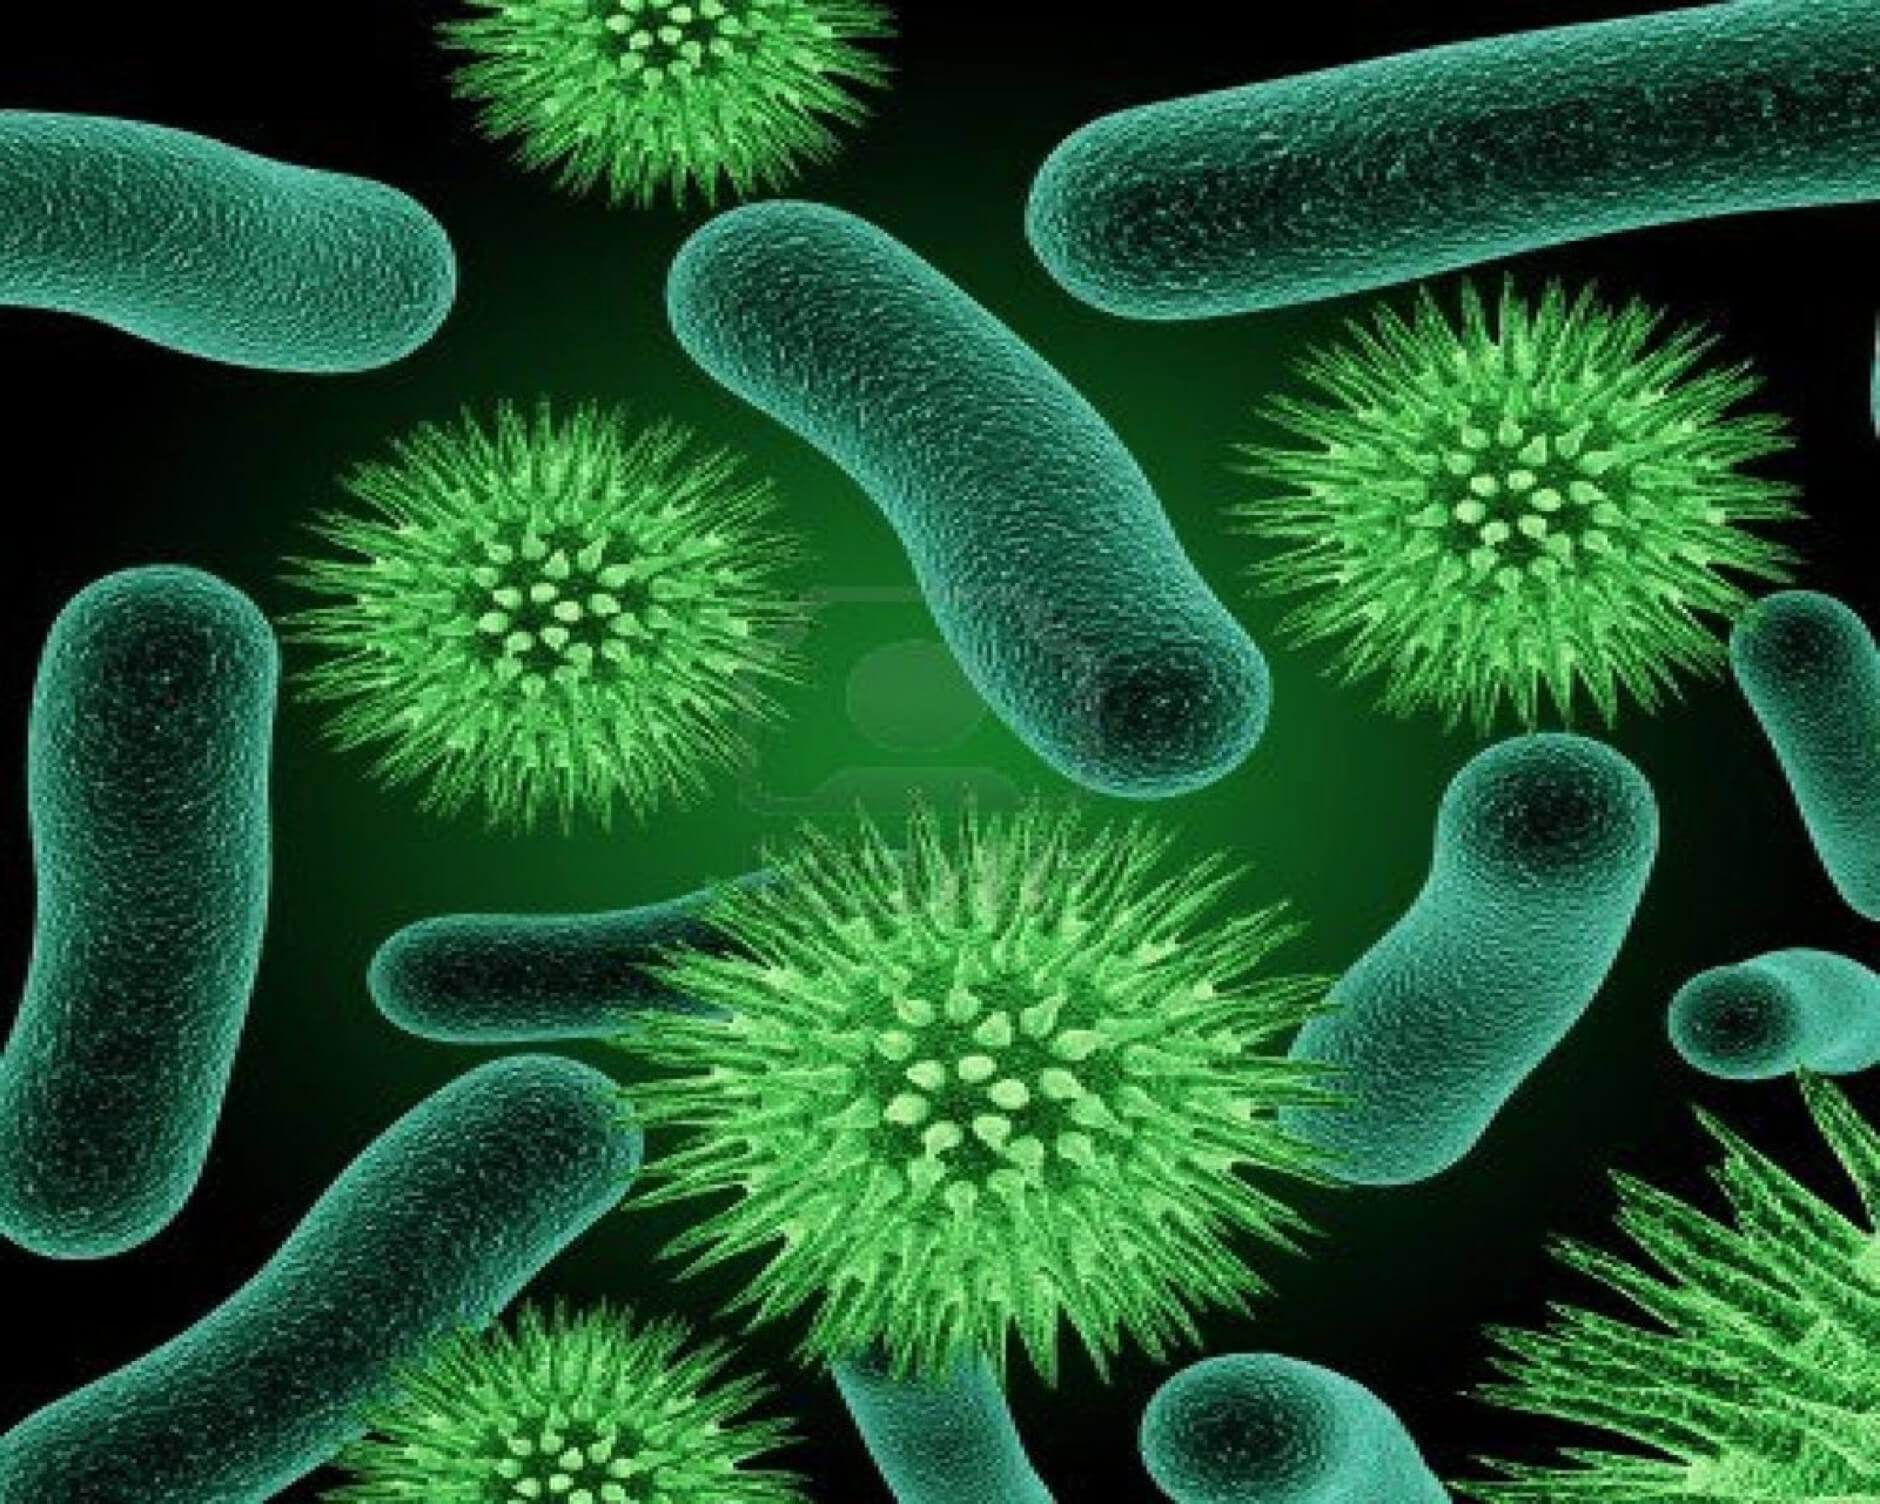 Vi khuẩn sinh sản chủ yếu theo hình thức nào?